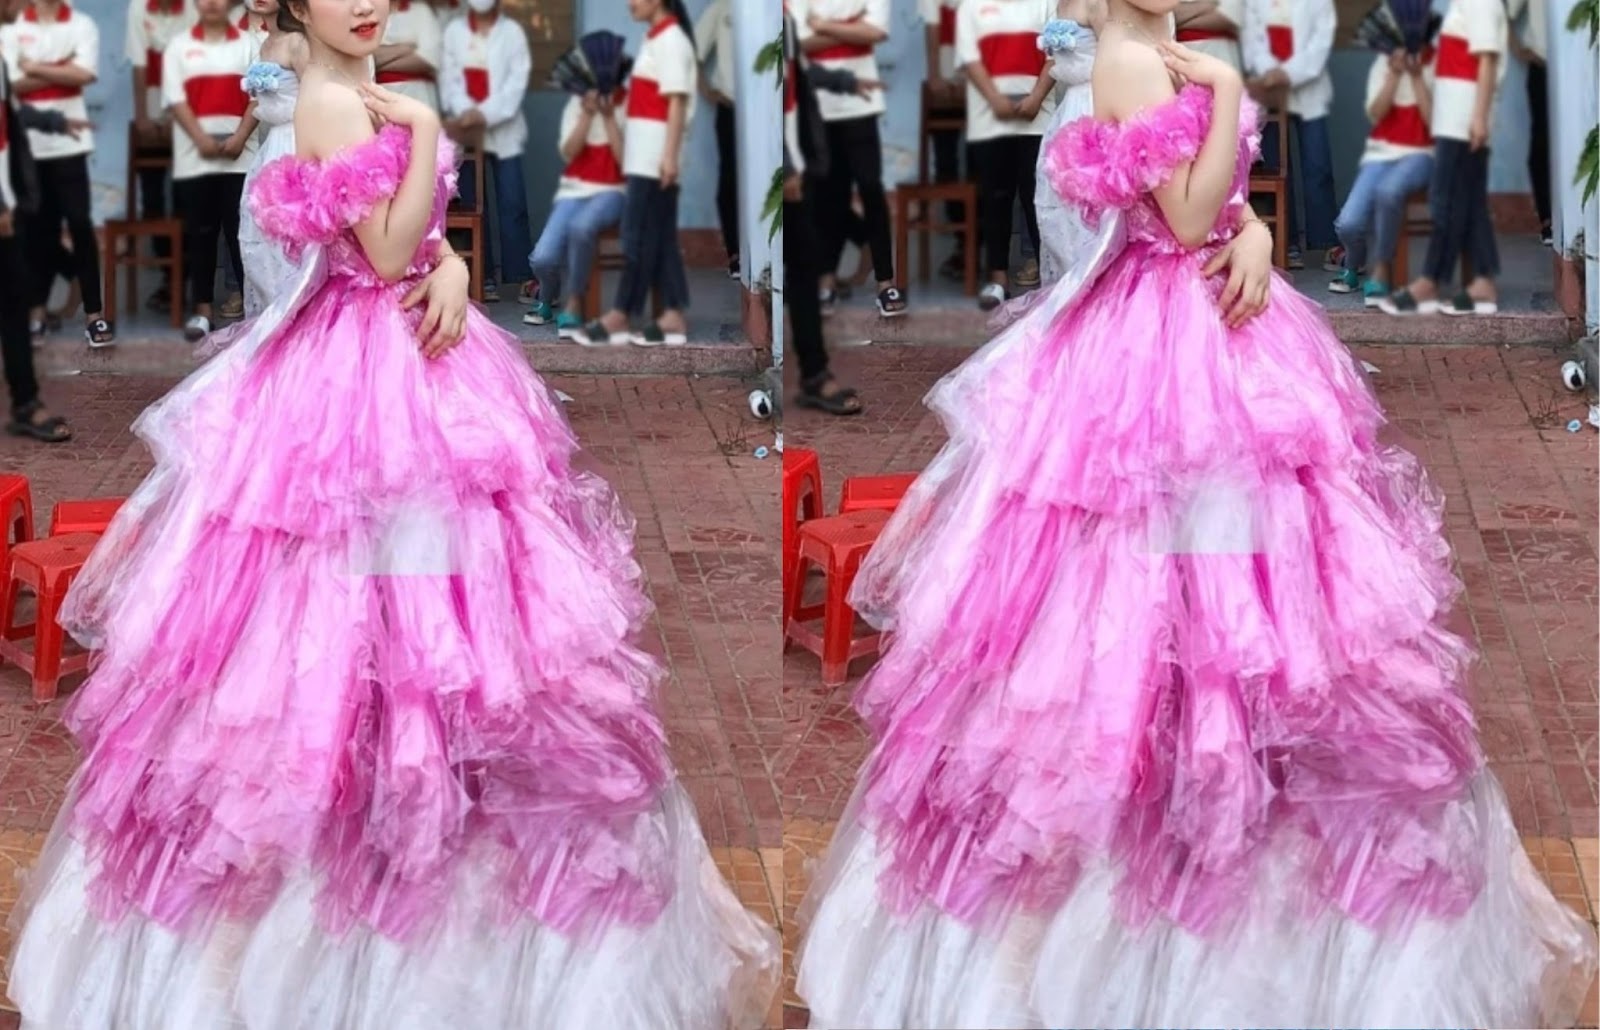 Dù mặt đẹp miễn chê, diva Thanh Lam vẫn không thoát khỏi thảm họa bởi gu  thời trang dị biệt